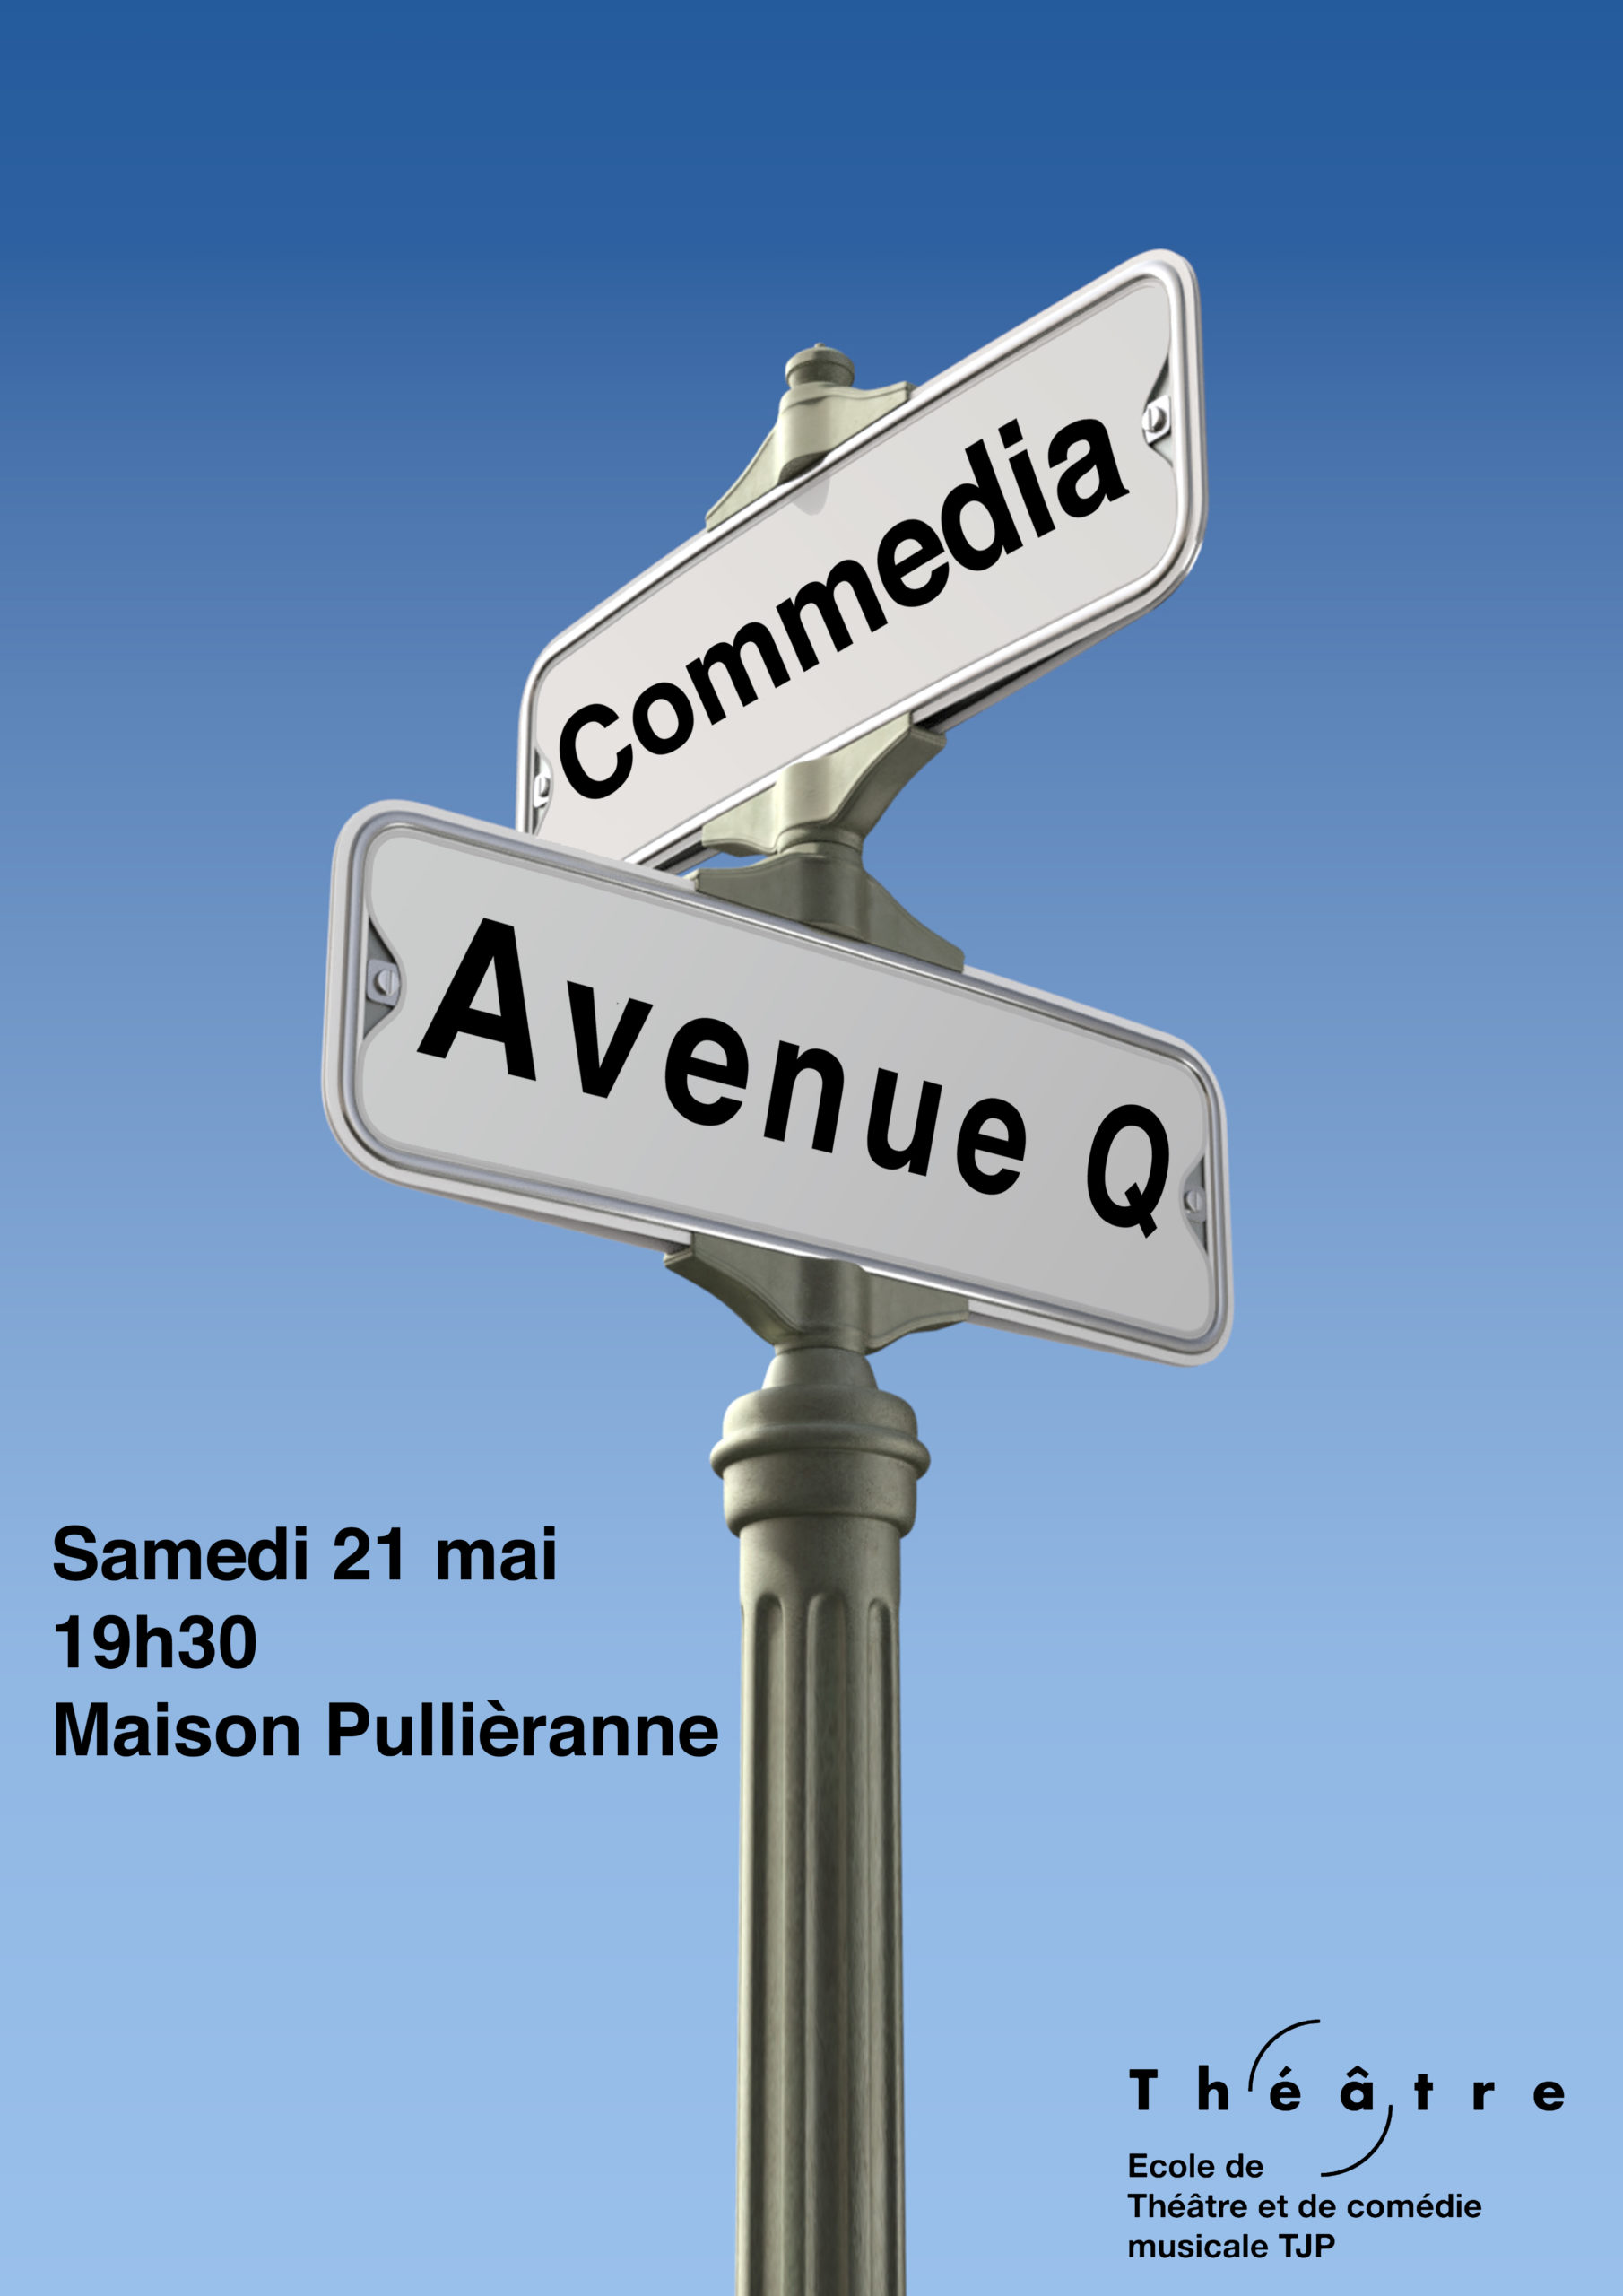 Avenue Q. & Commedia